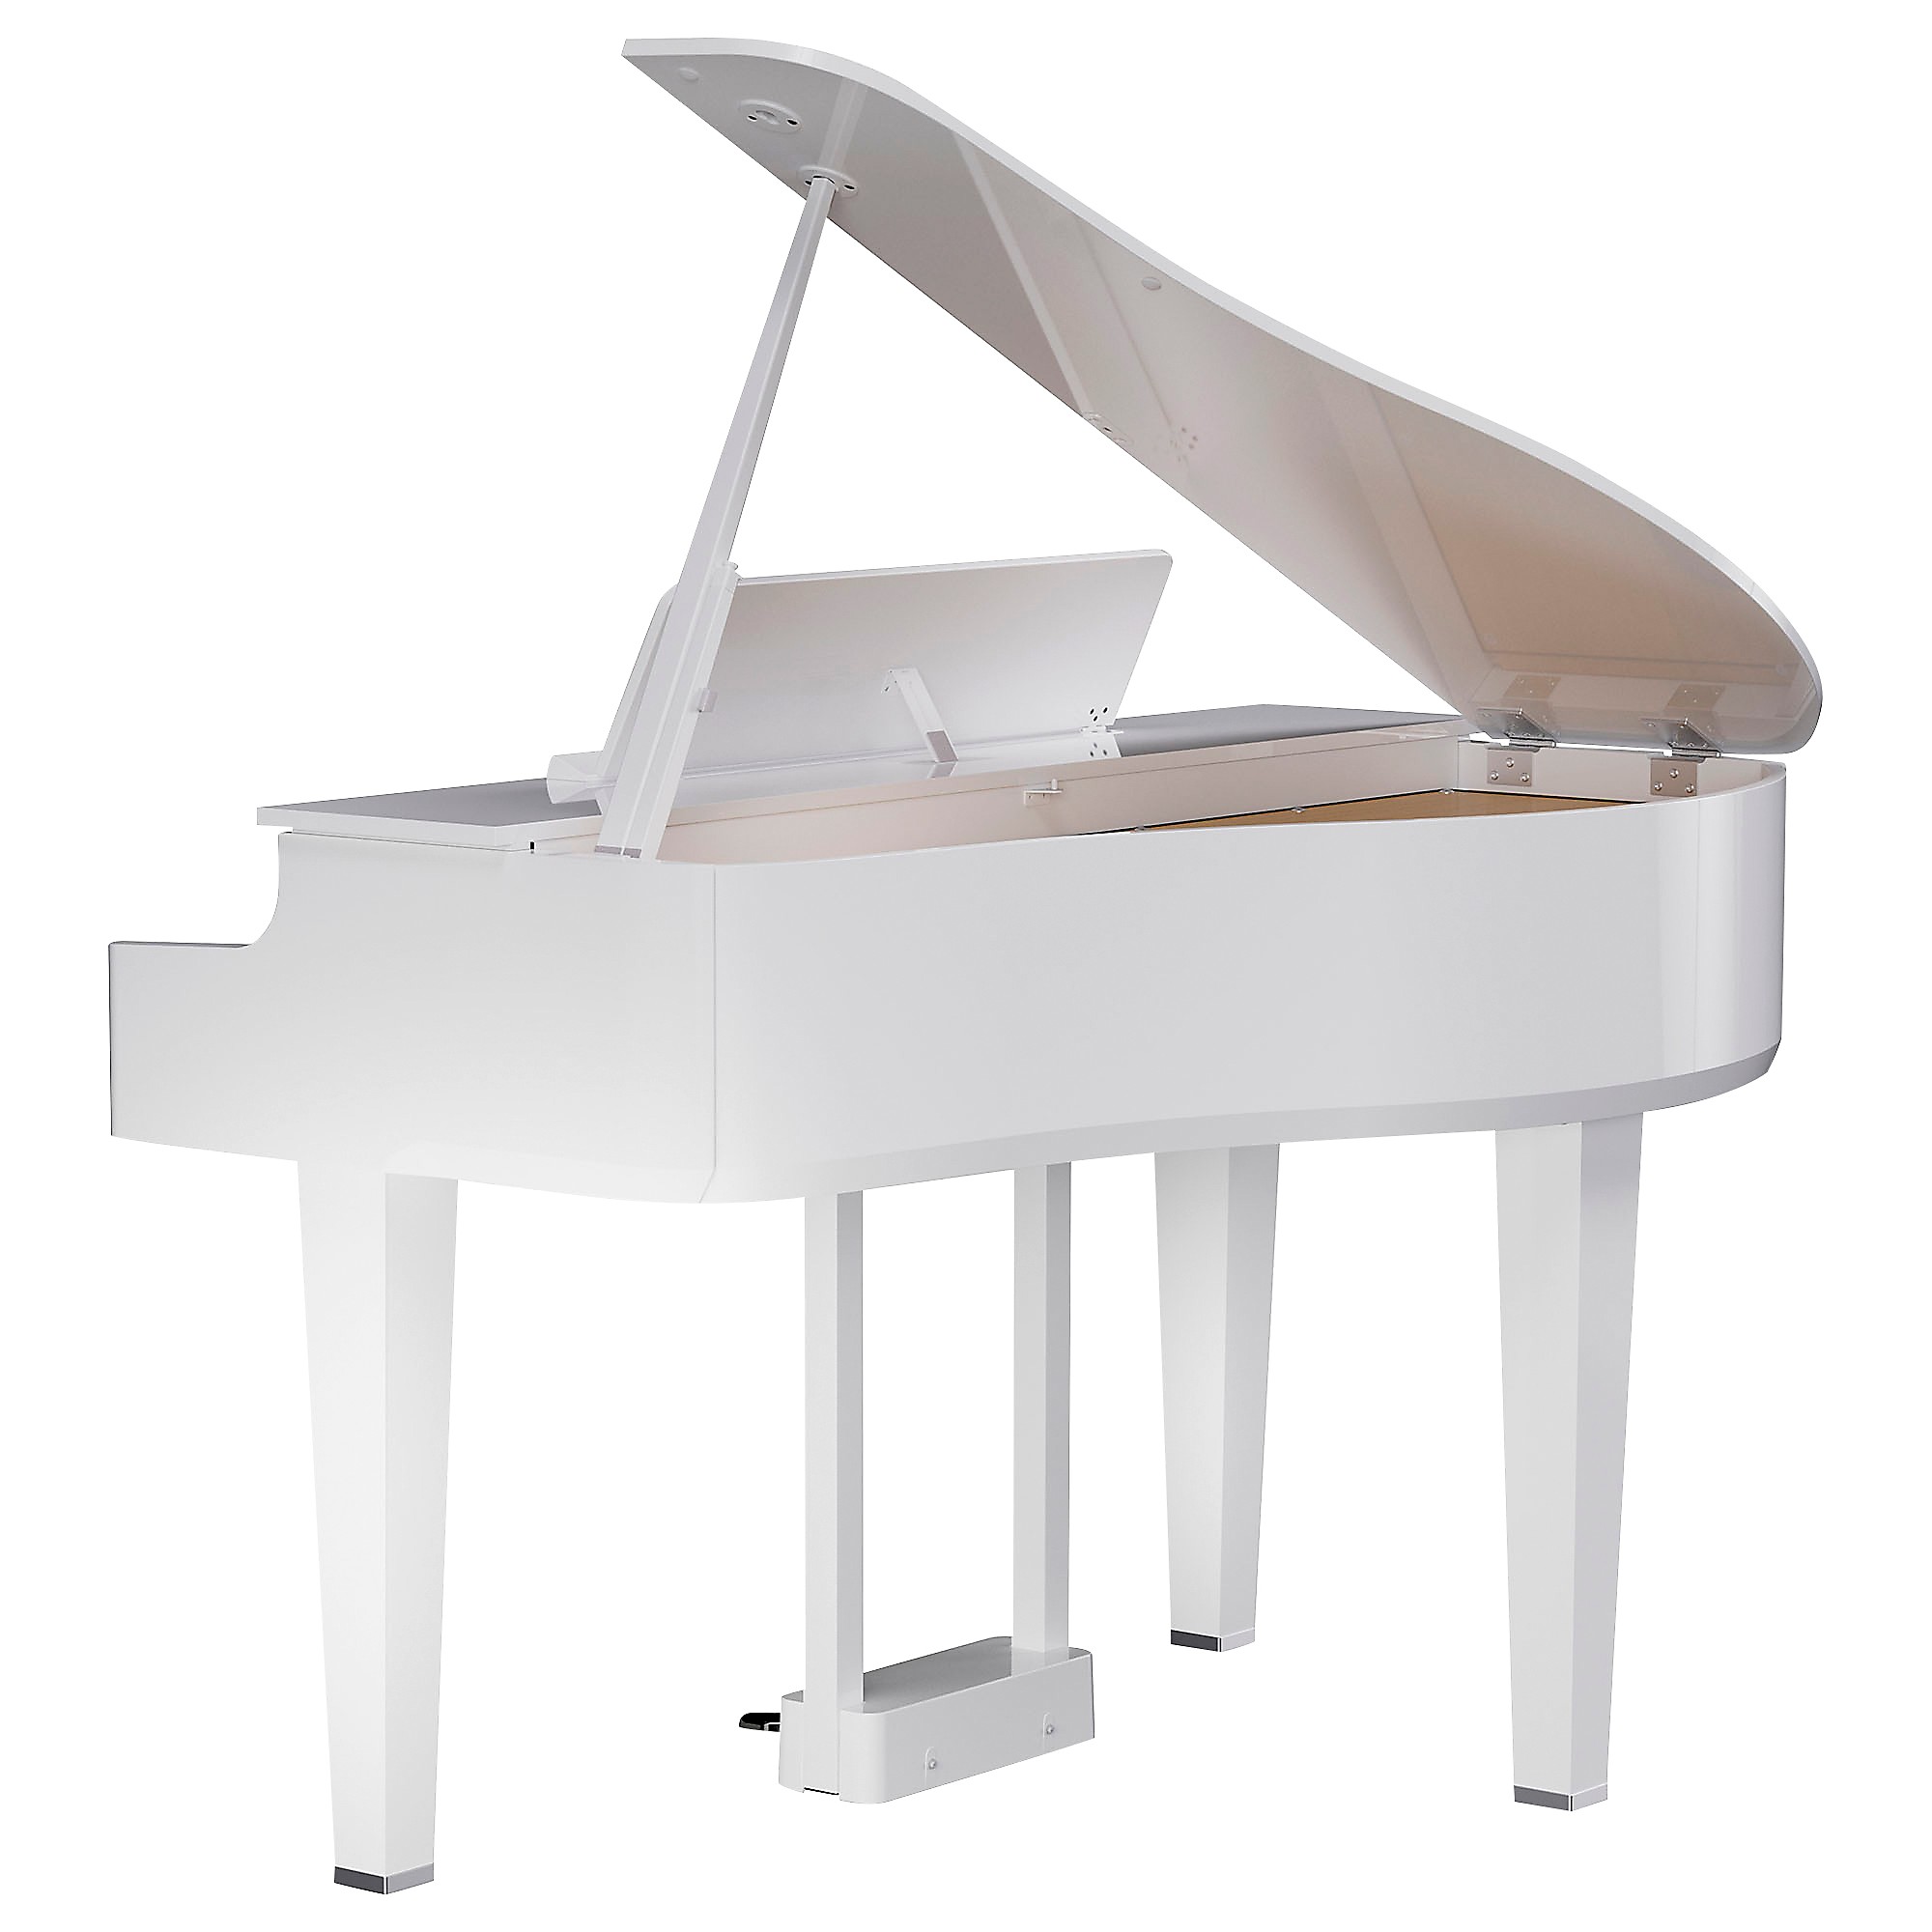 white baby grand piano yamaha